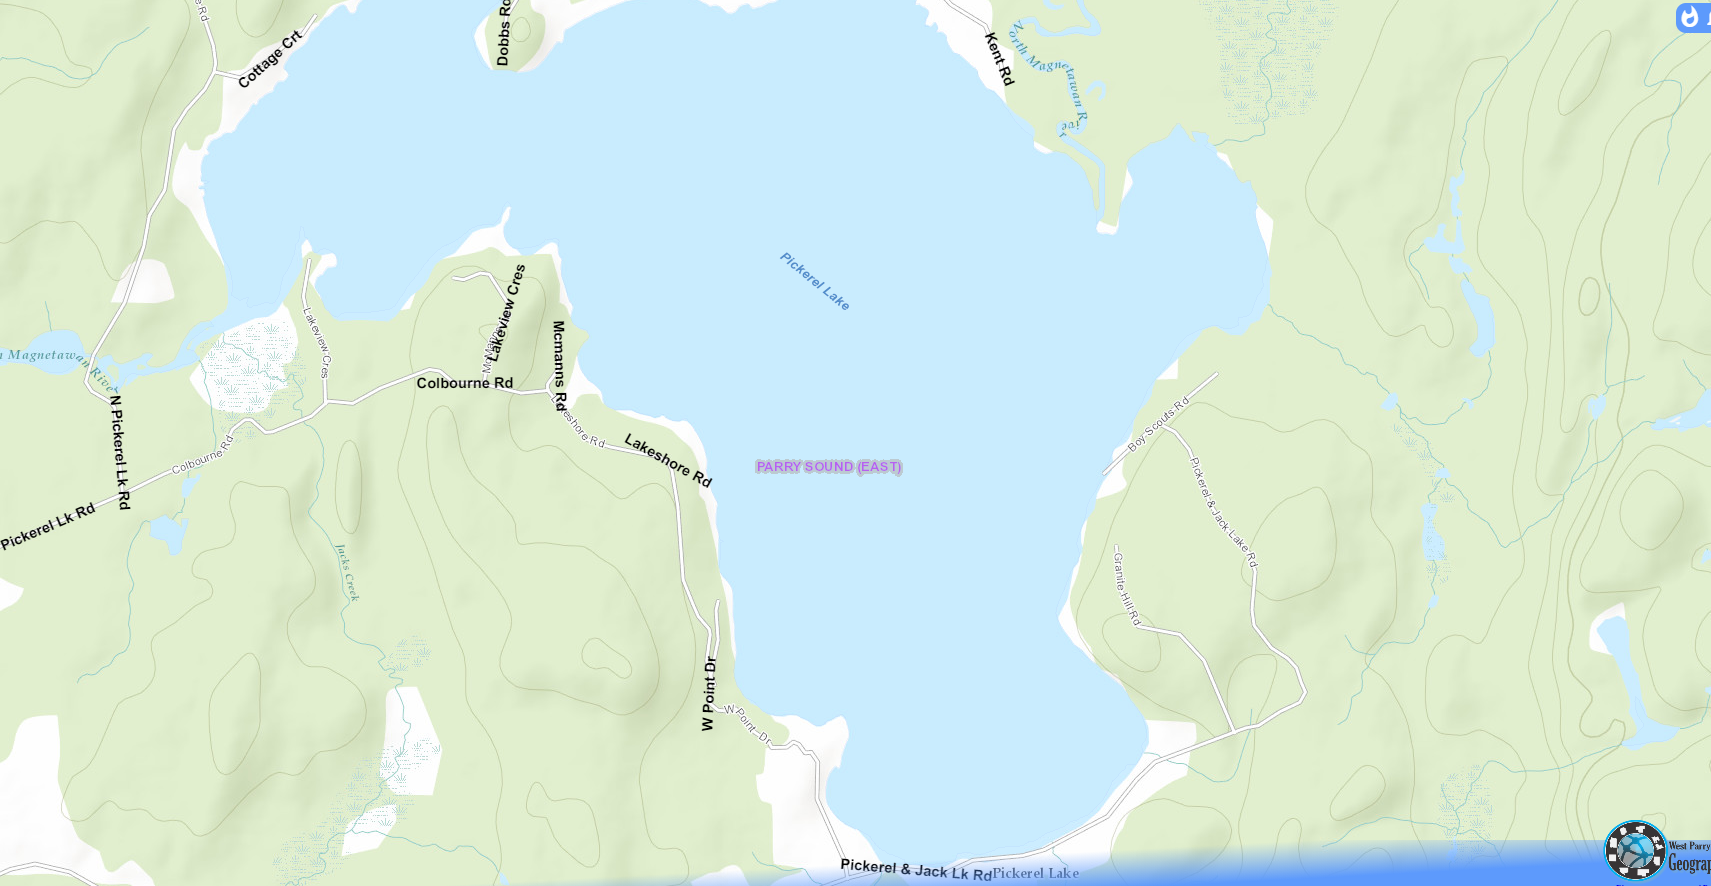 Pickerel Lake Cadastral Map - Pickerel Lake - Muskoka